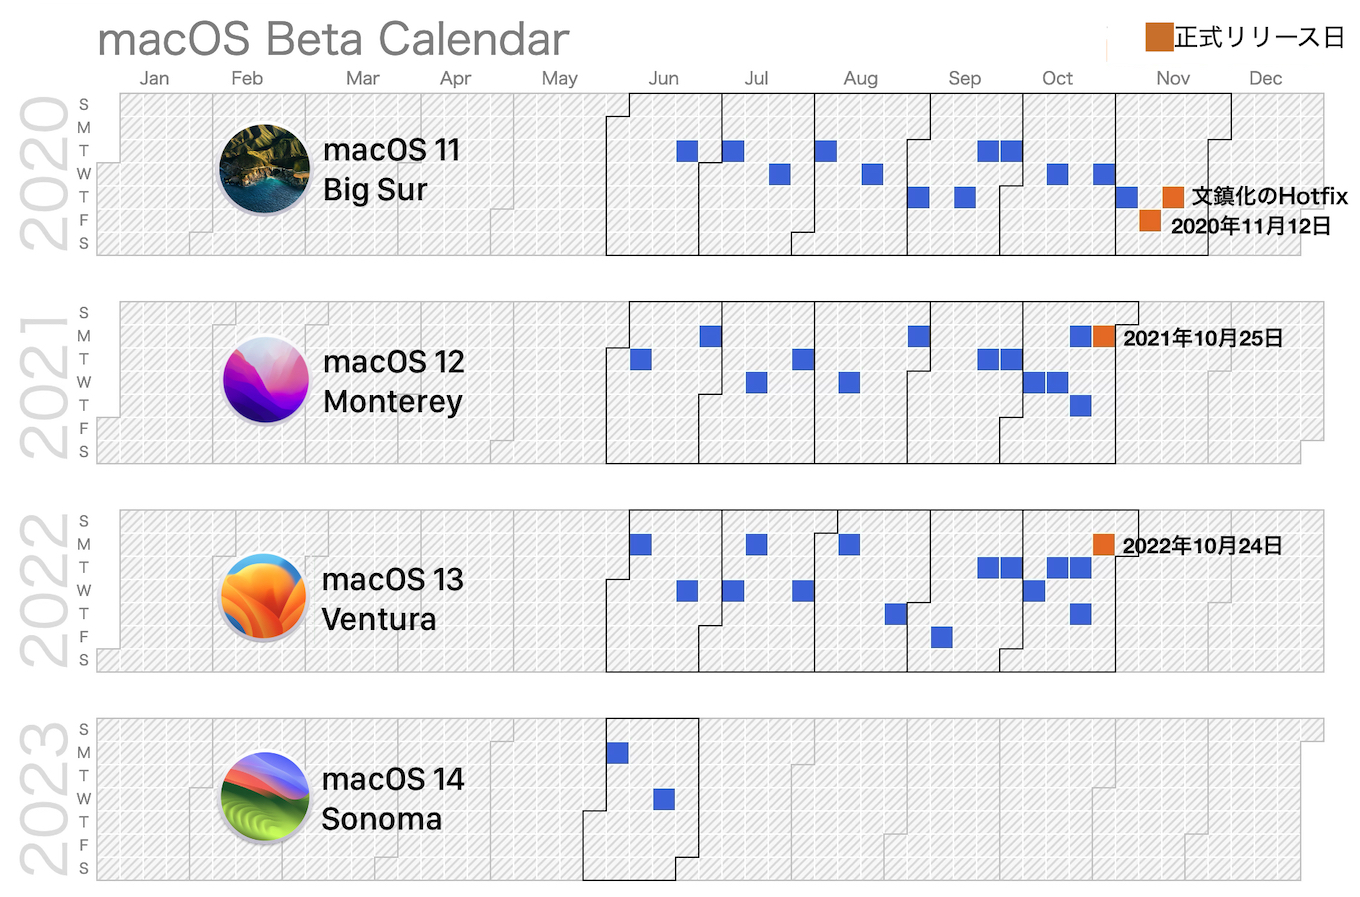 macOS 14 Sonoma Beta calendar